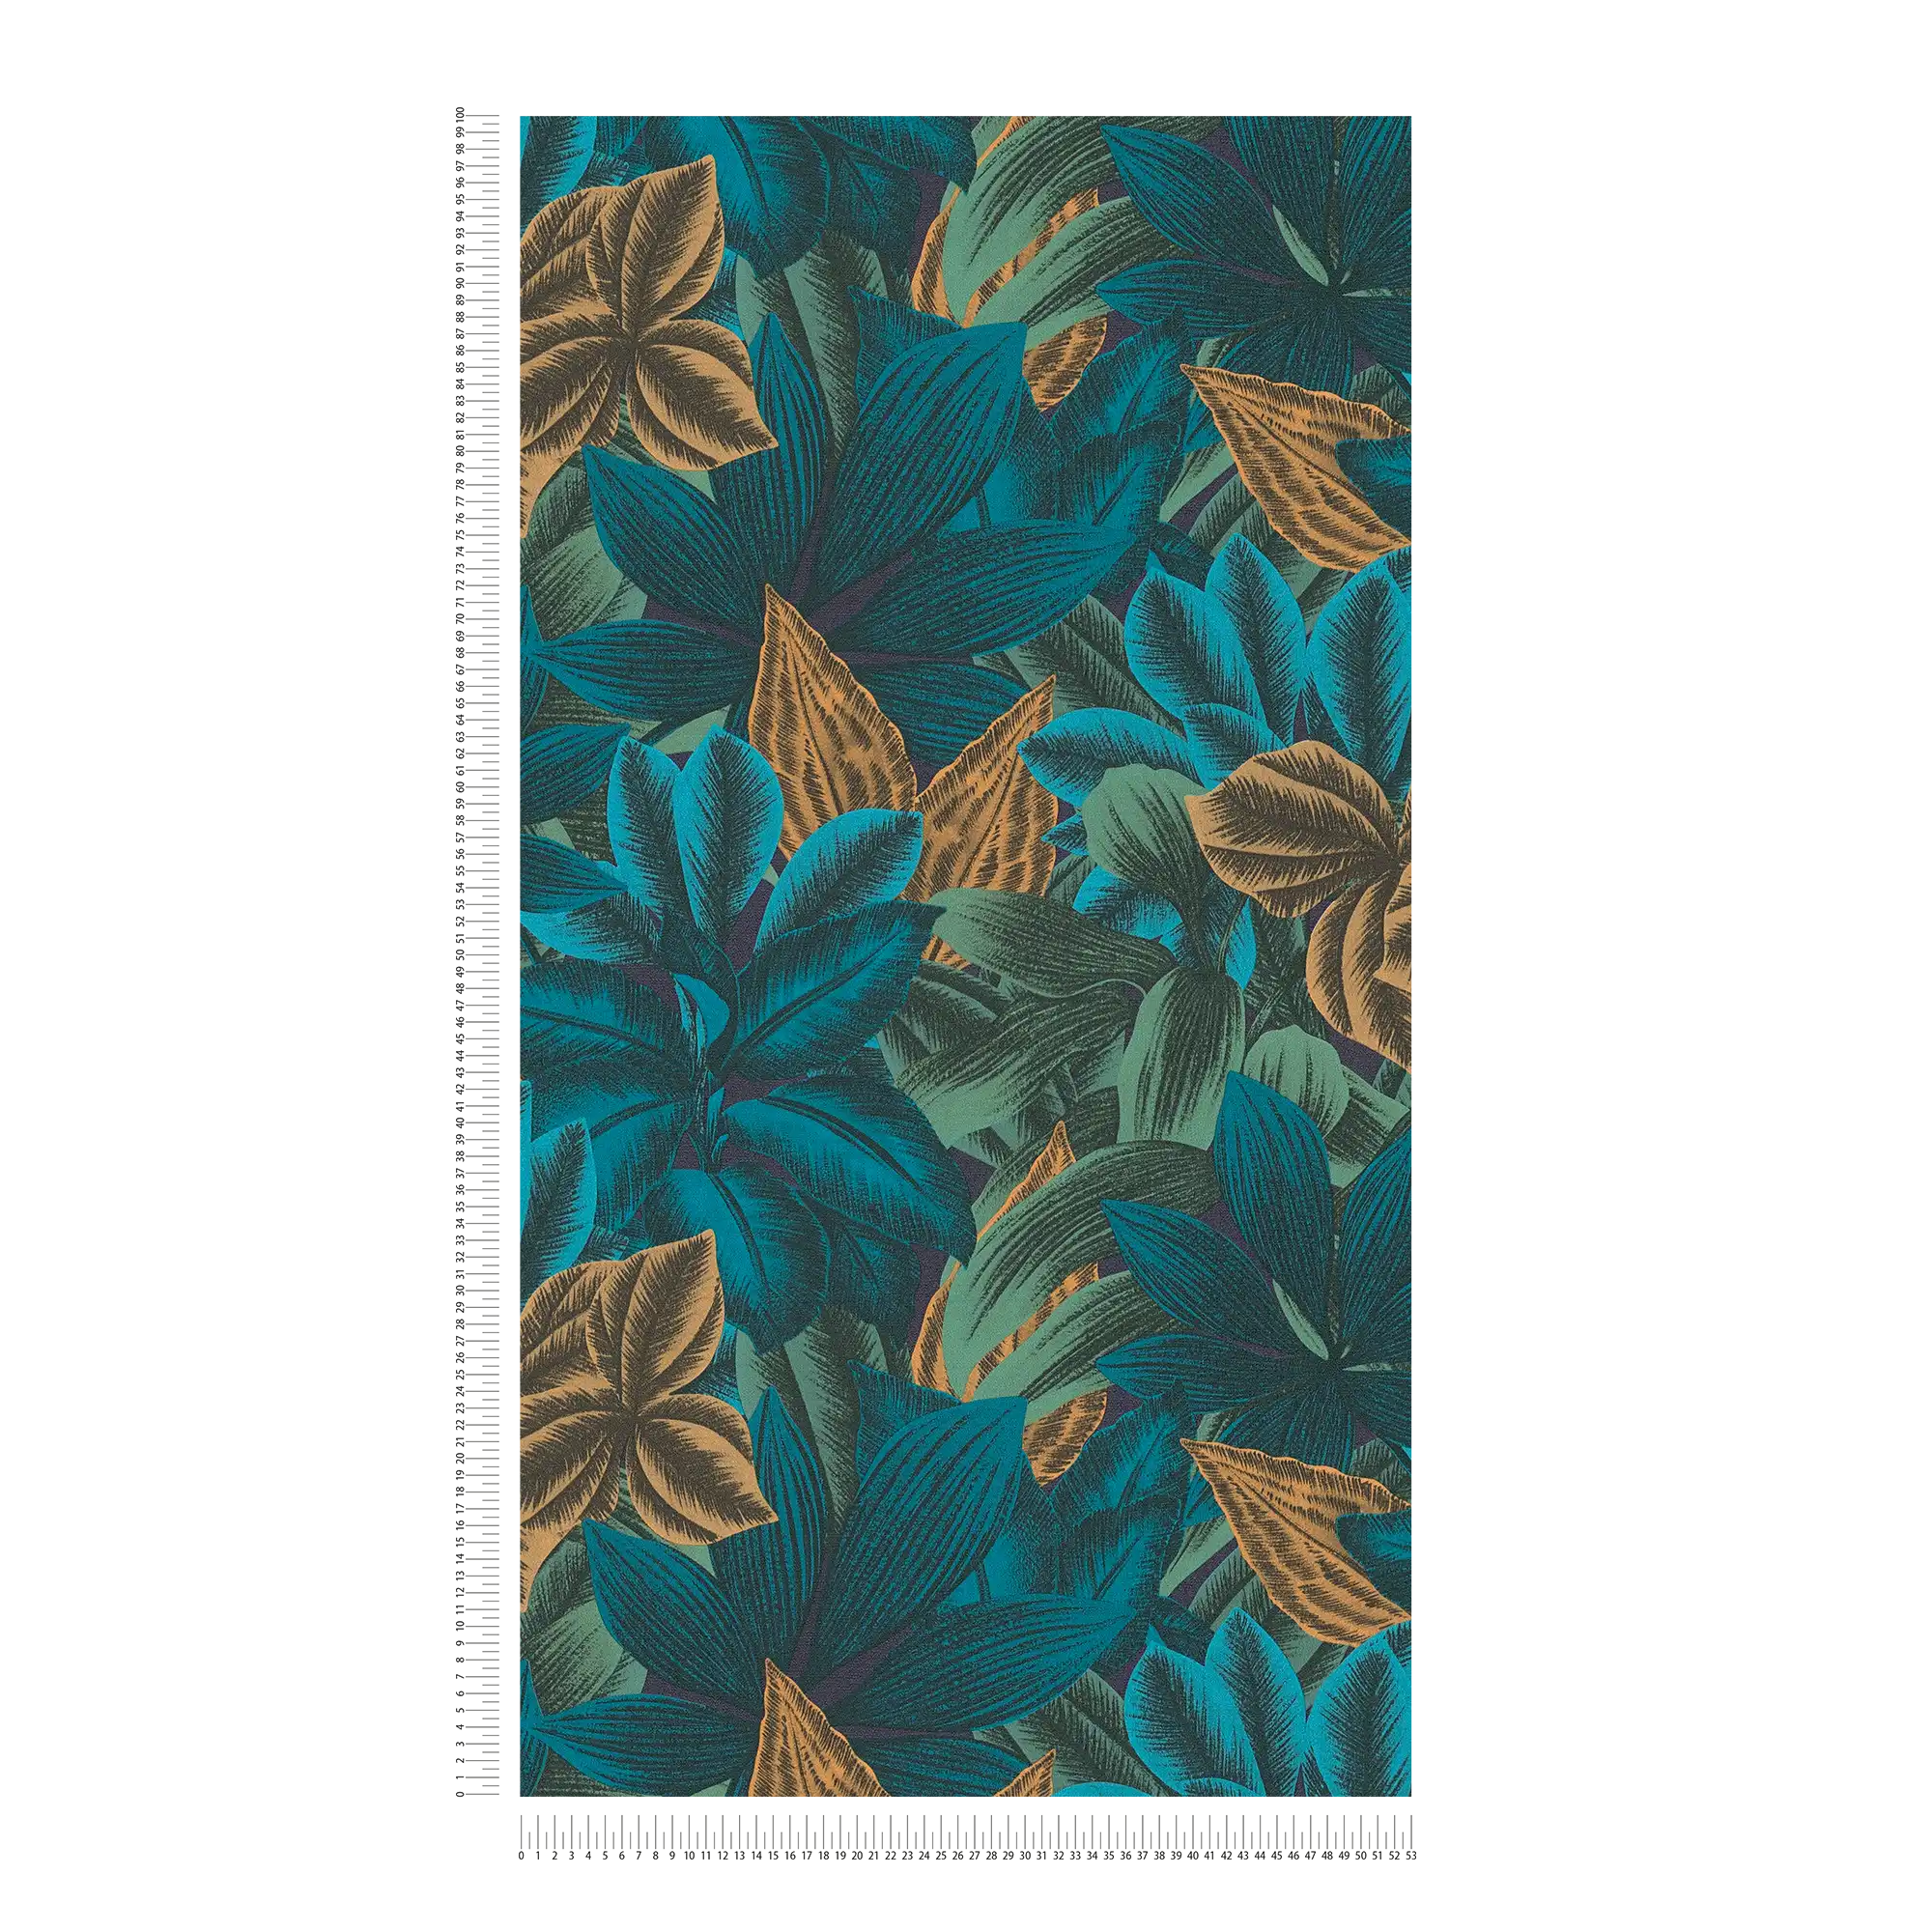             Gebloemd vliesbehang met jungle bladmotief - blauw, oranje, paars
        